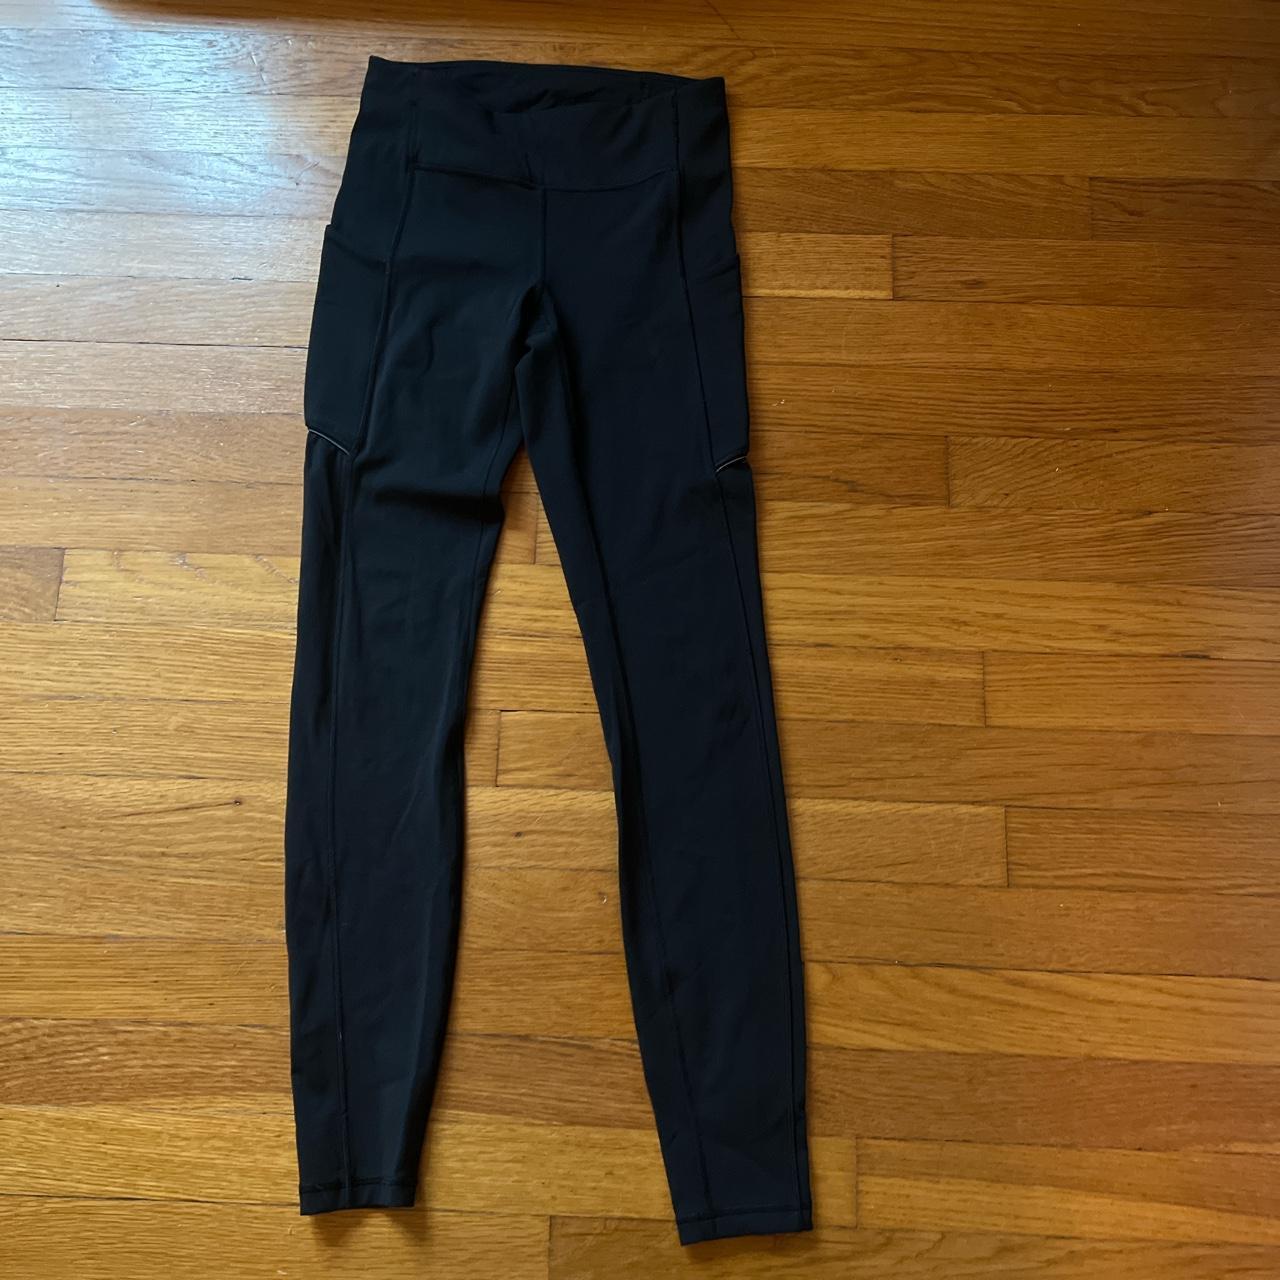 Black lululemon leggings! Has leggings pockets, has - Depop